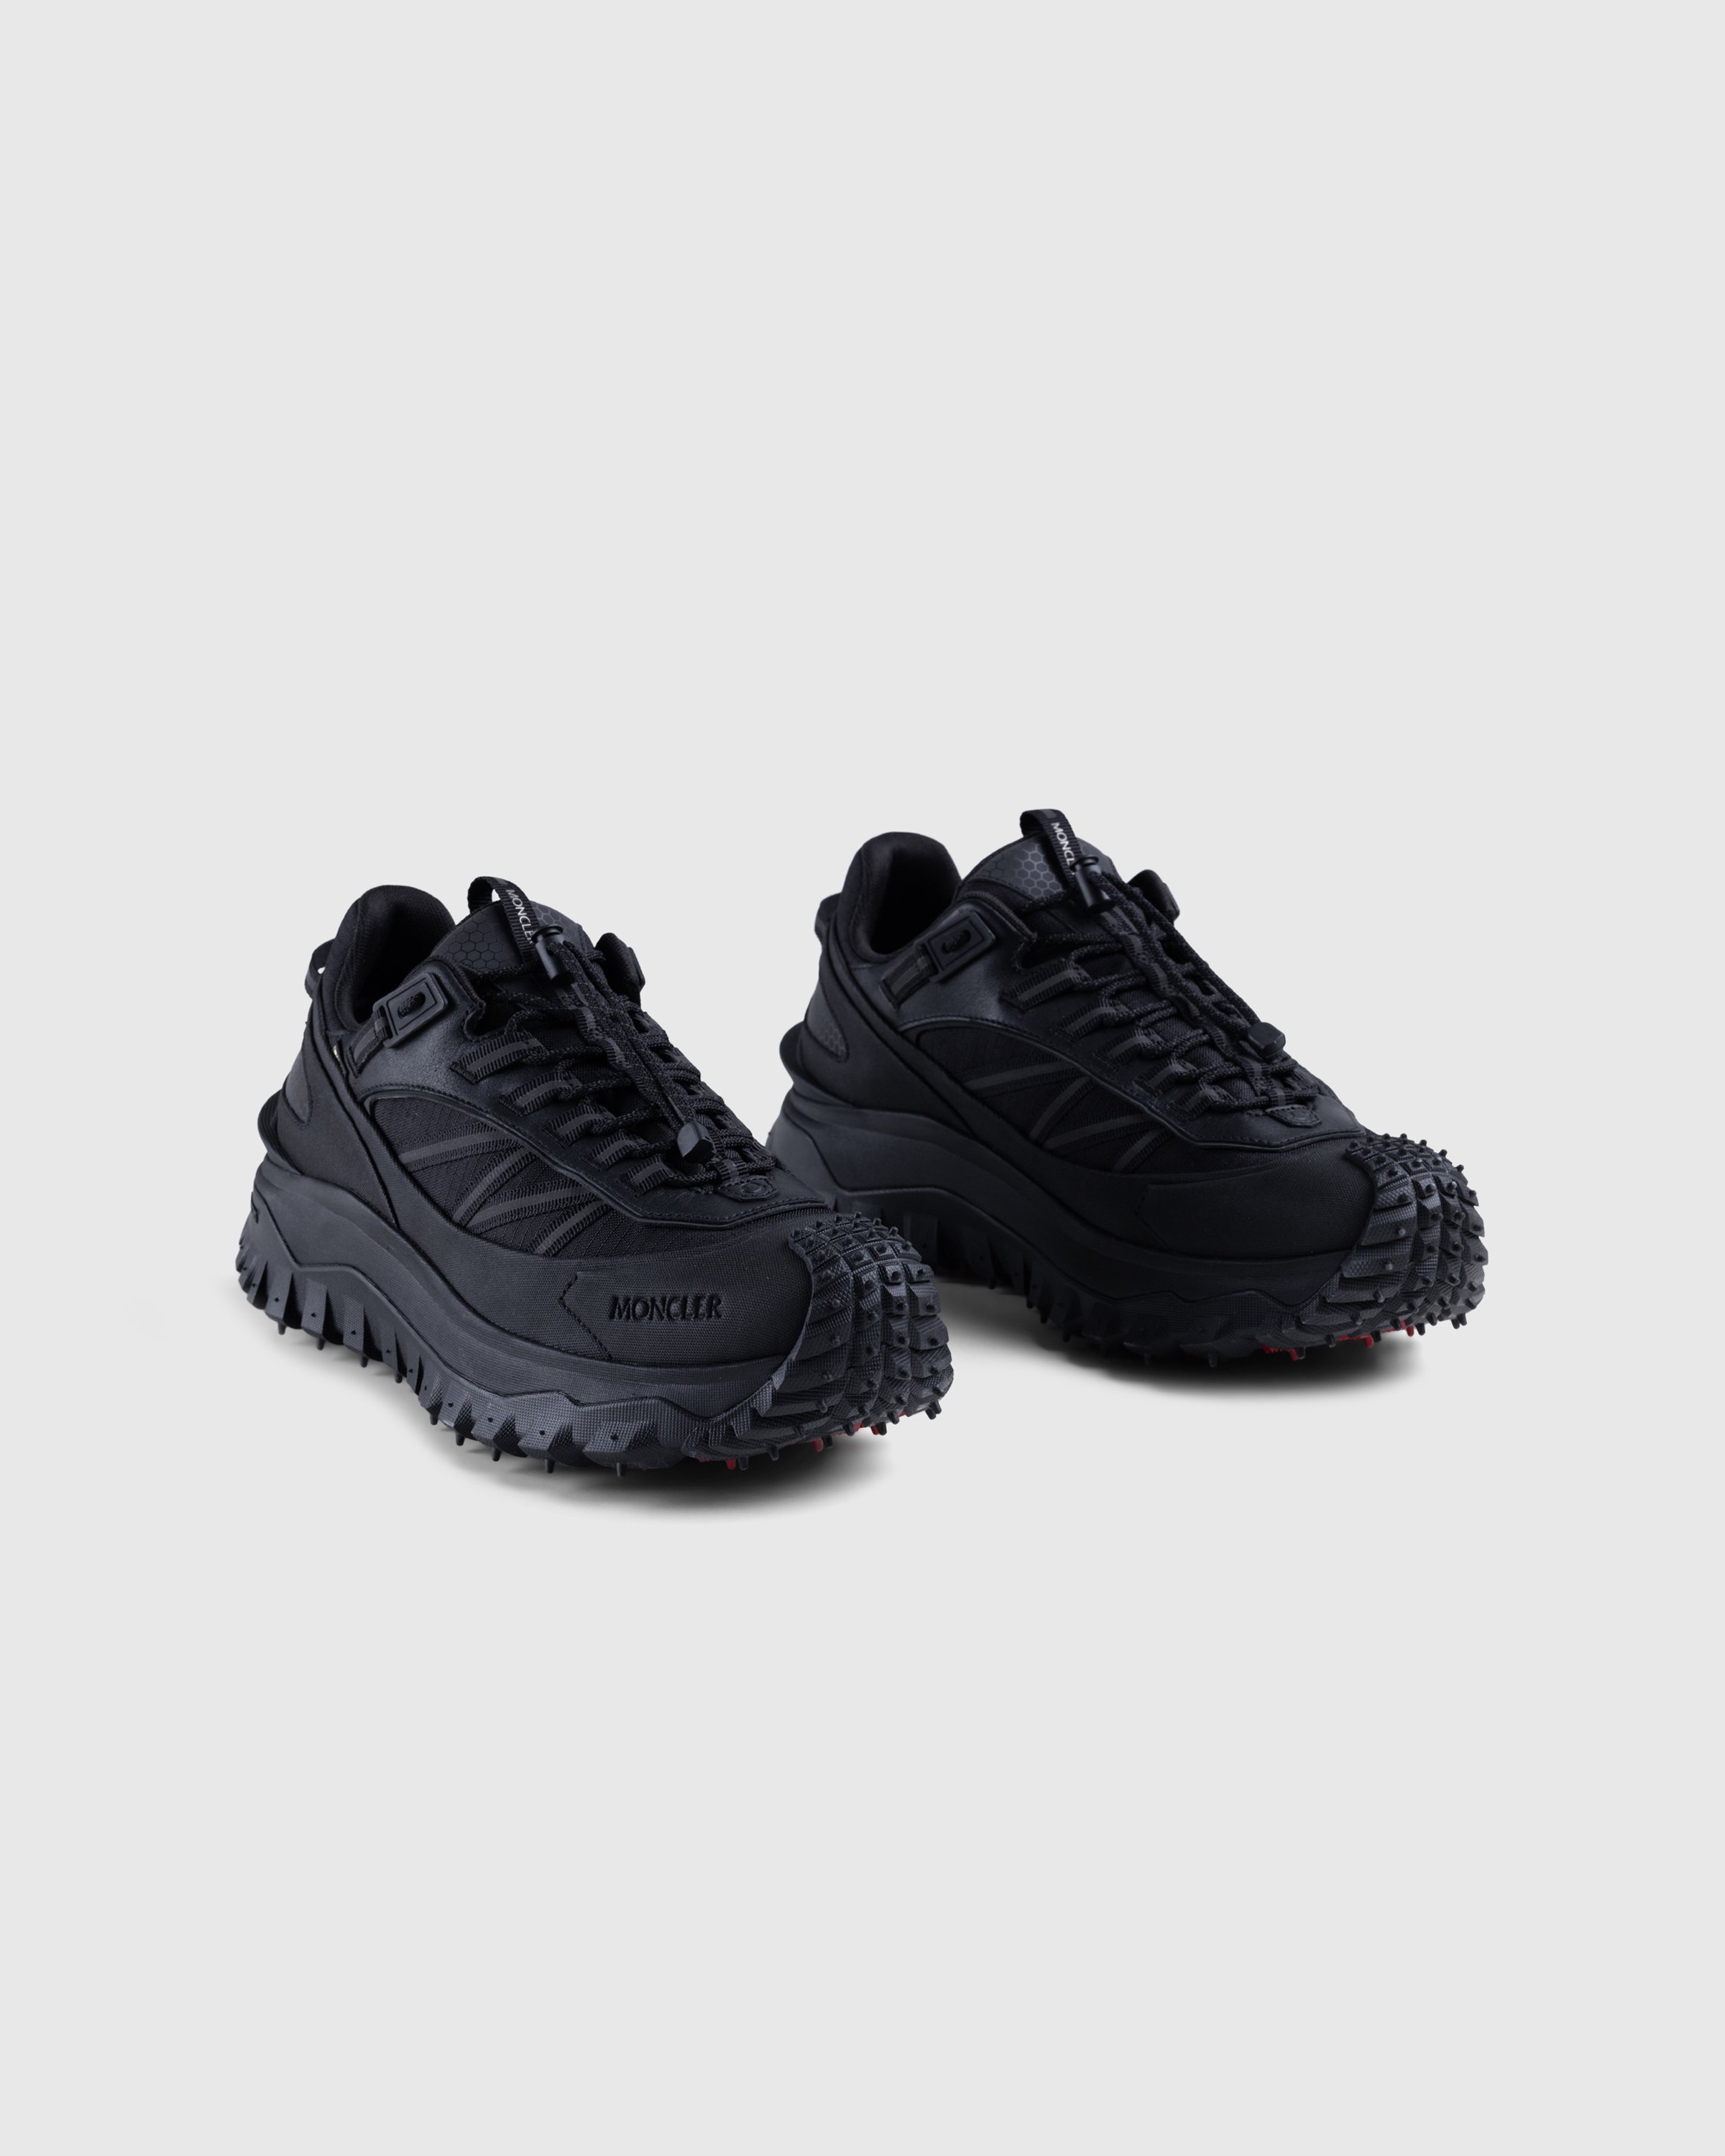 Moncler - Trailgrip GTX Low-Top Sneakers Black - Footwear - Black - Image 3